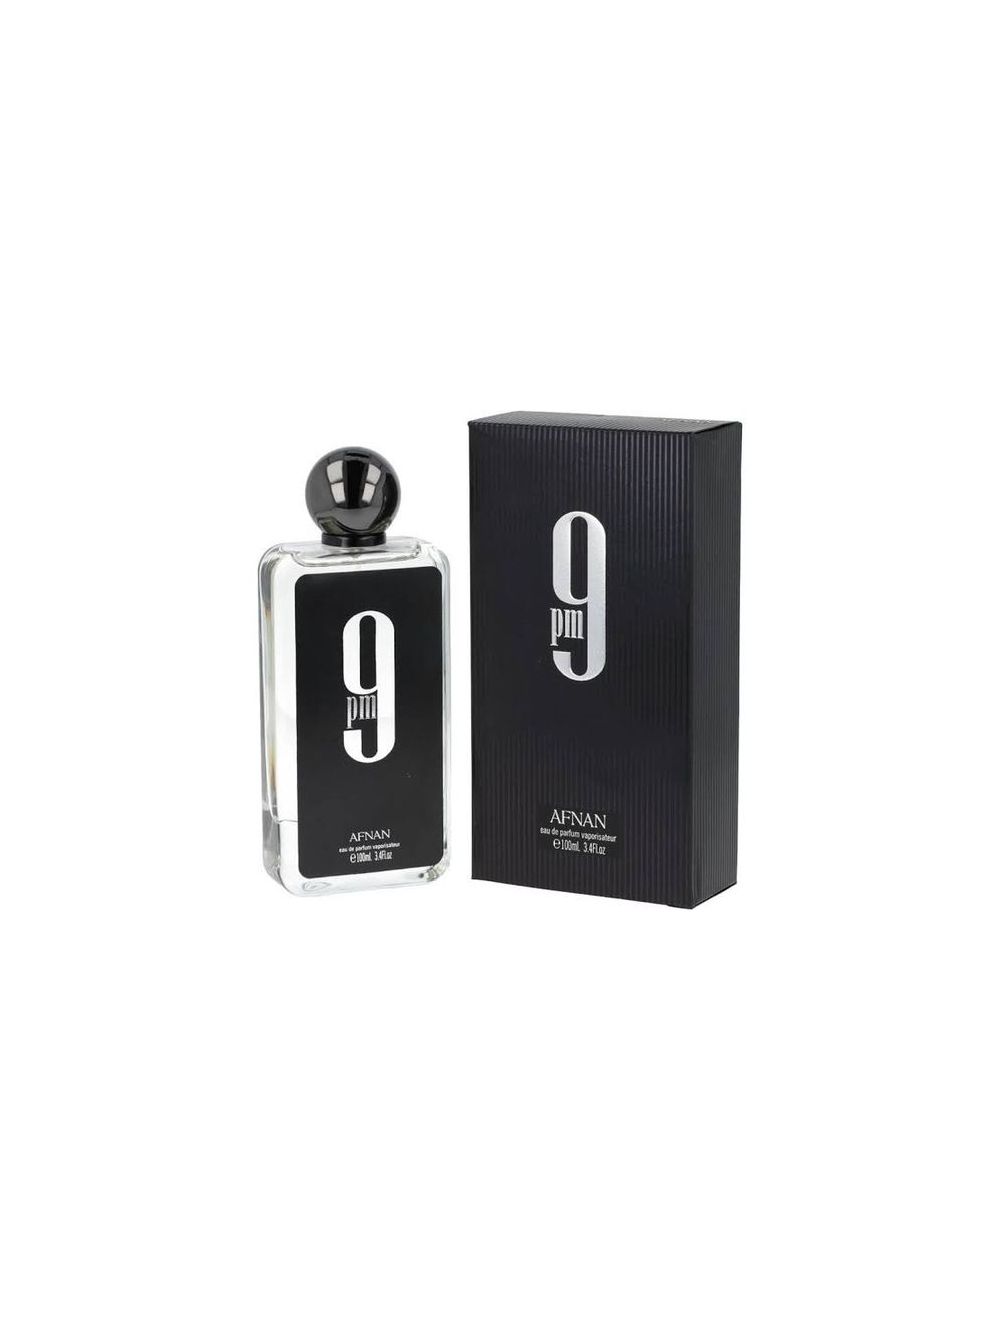 Afnan 9PM EDP for Men Perfume 3.4 Oz / 100 ml TOP Best PARFUM SPRAY FOR MEN